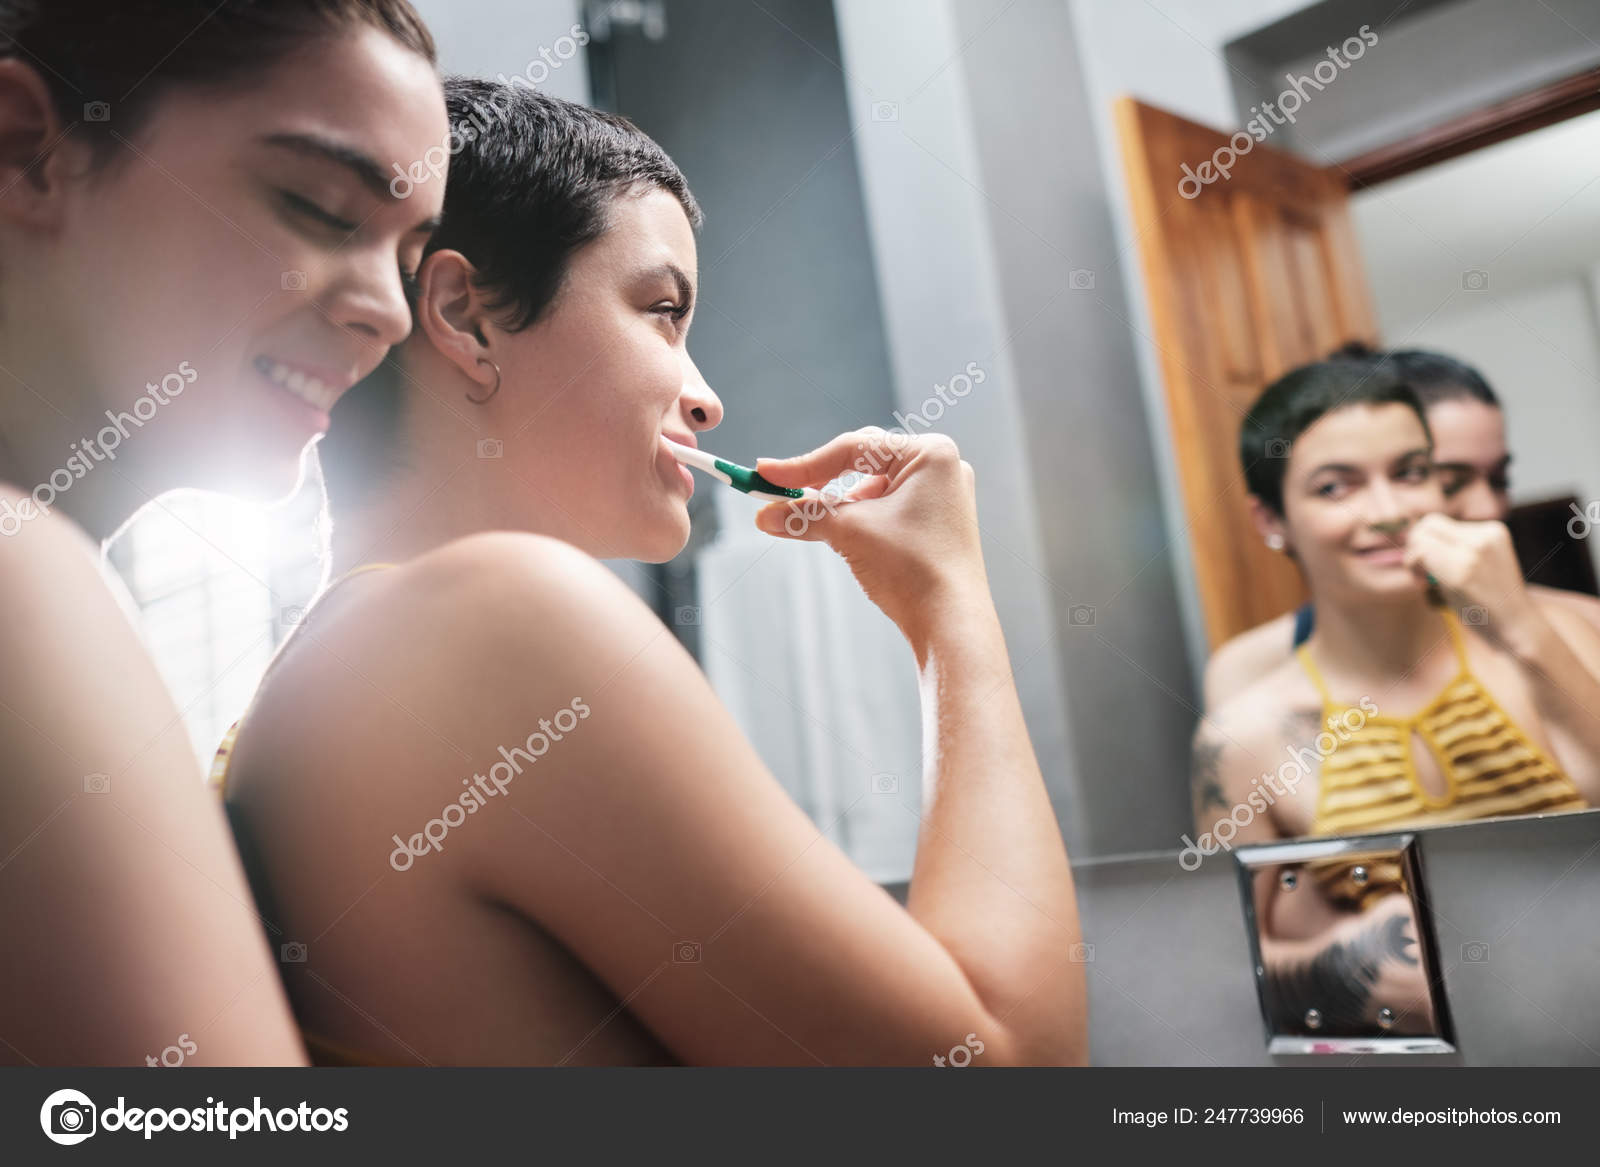 lesbian girls in shower xxx pics